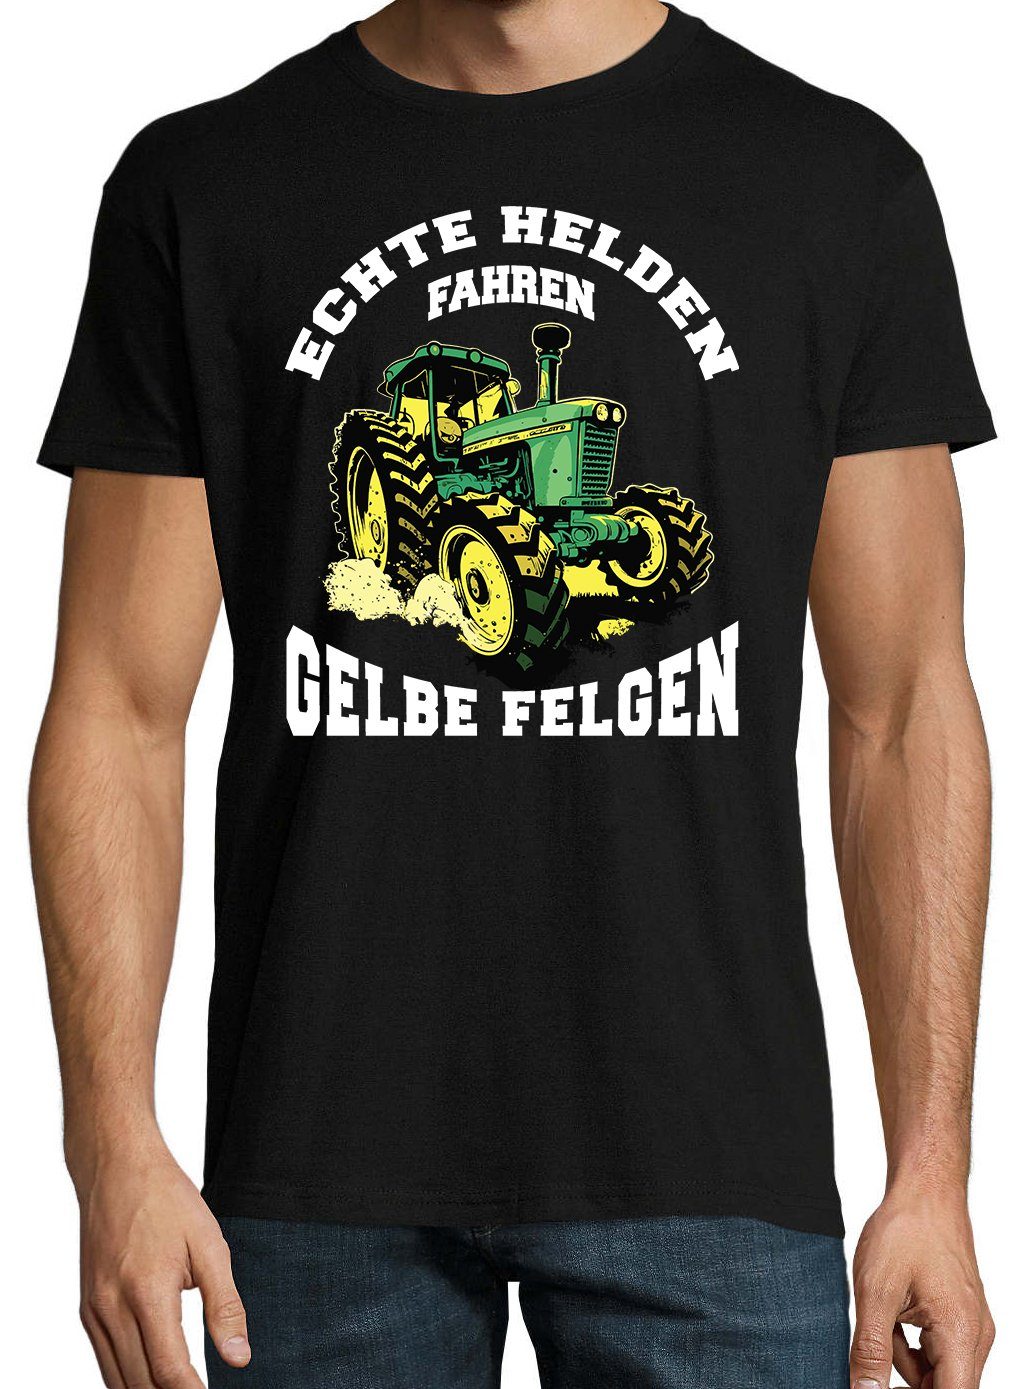 Print-Shirt lustigem Spruch Designz Herren gelbe Youth T-Shirt fahren Felgen" Helden "Echte Schwarz mit